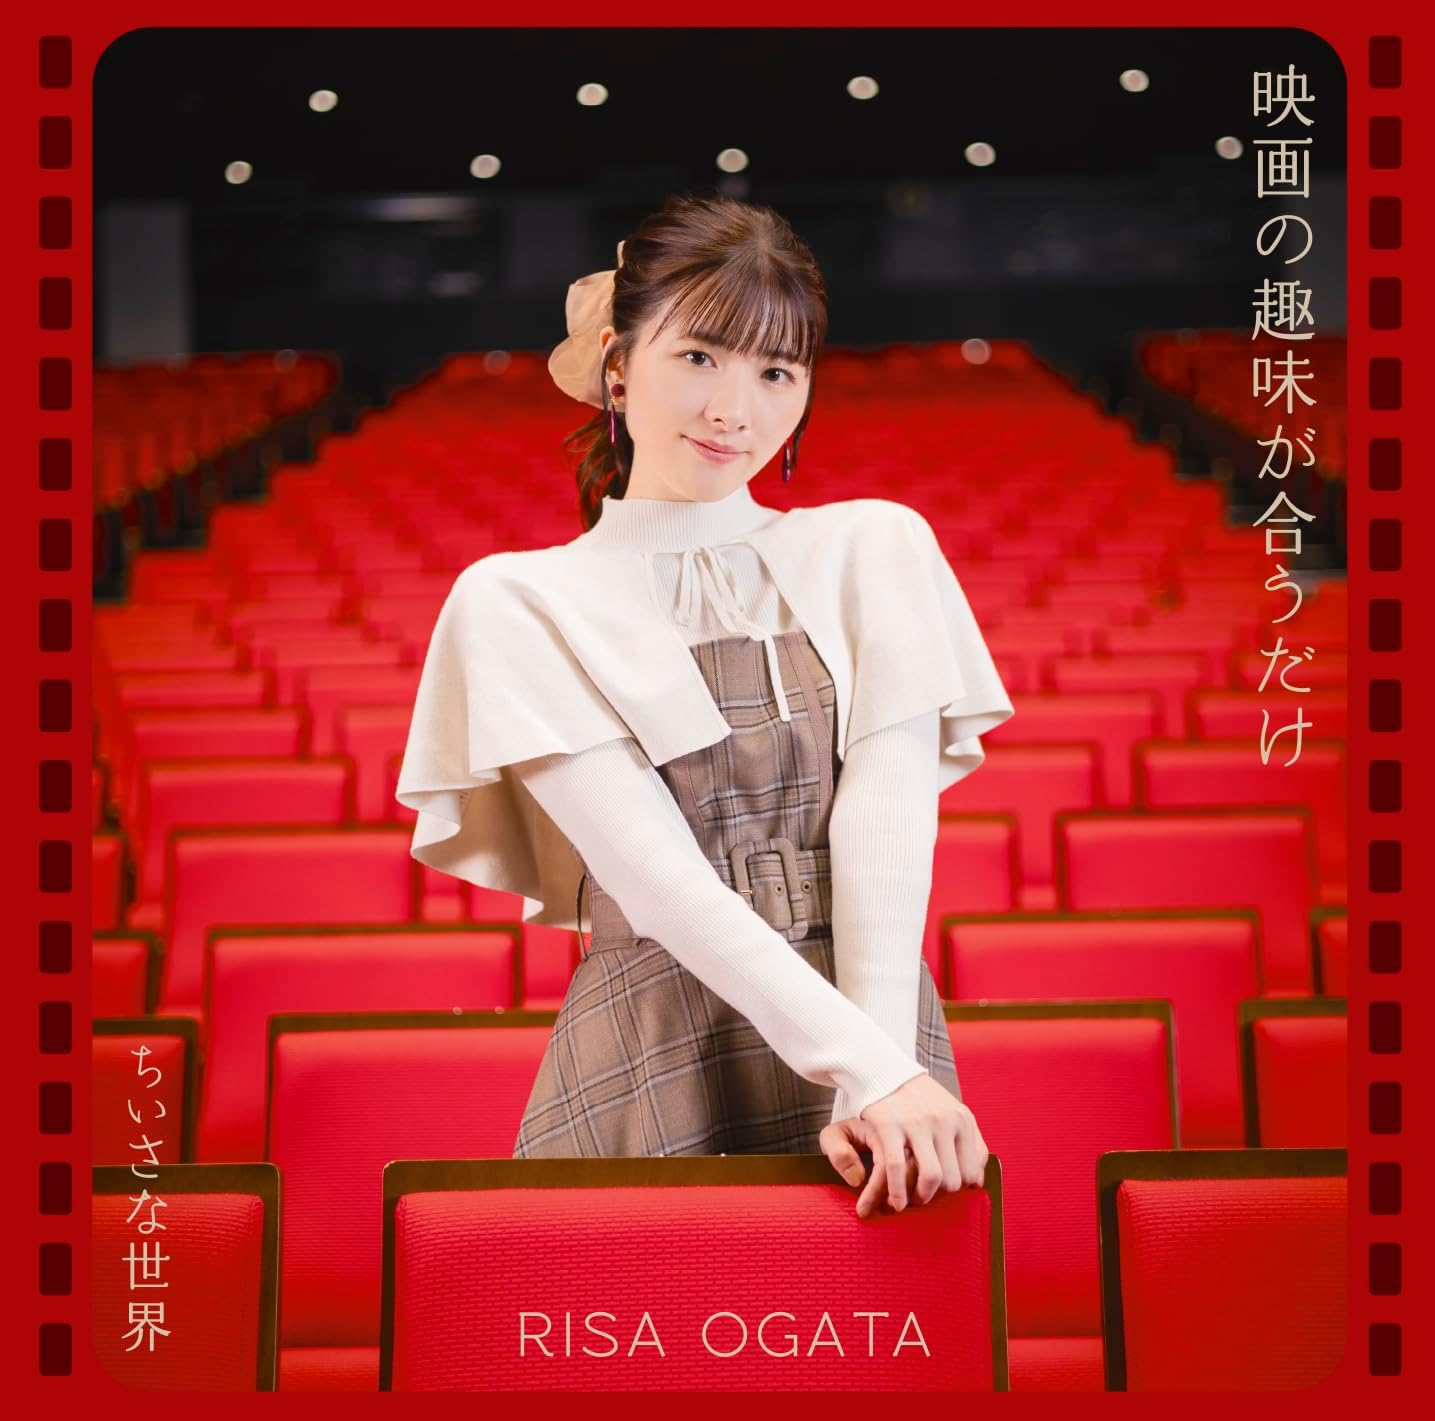 Risa Ogata — Eiga no Shumi ga Au Dake cover artwork